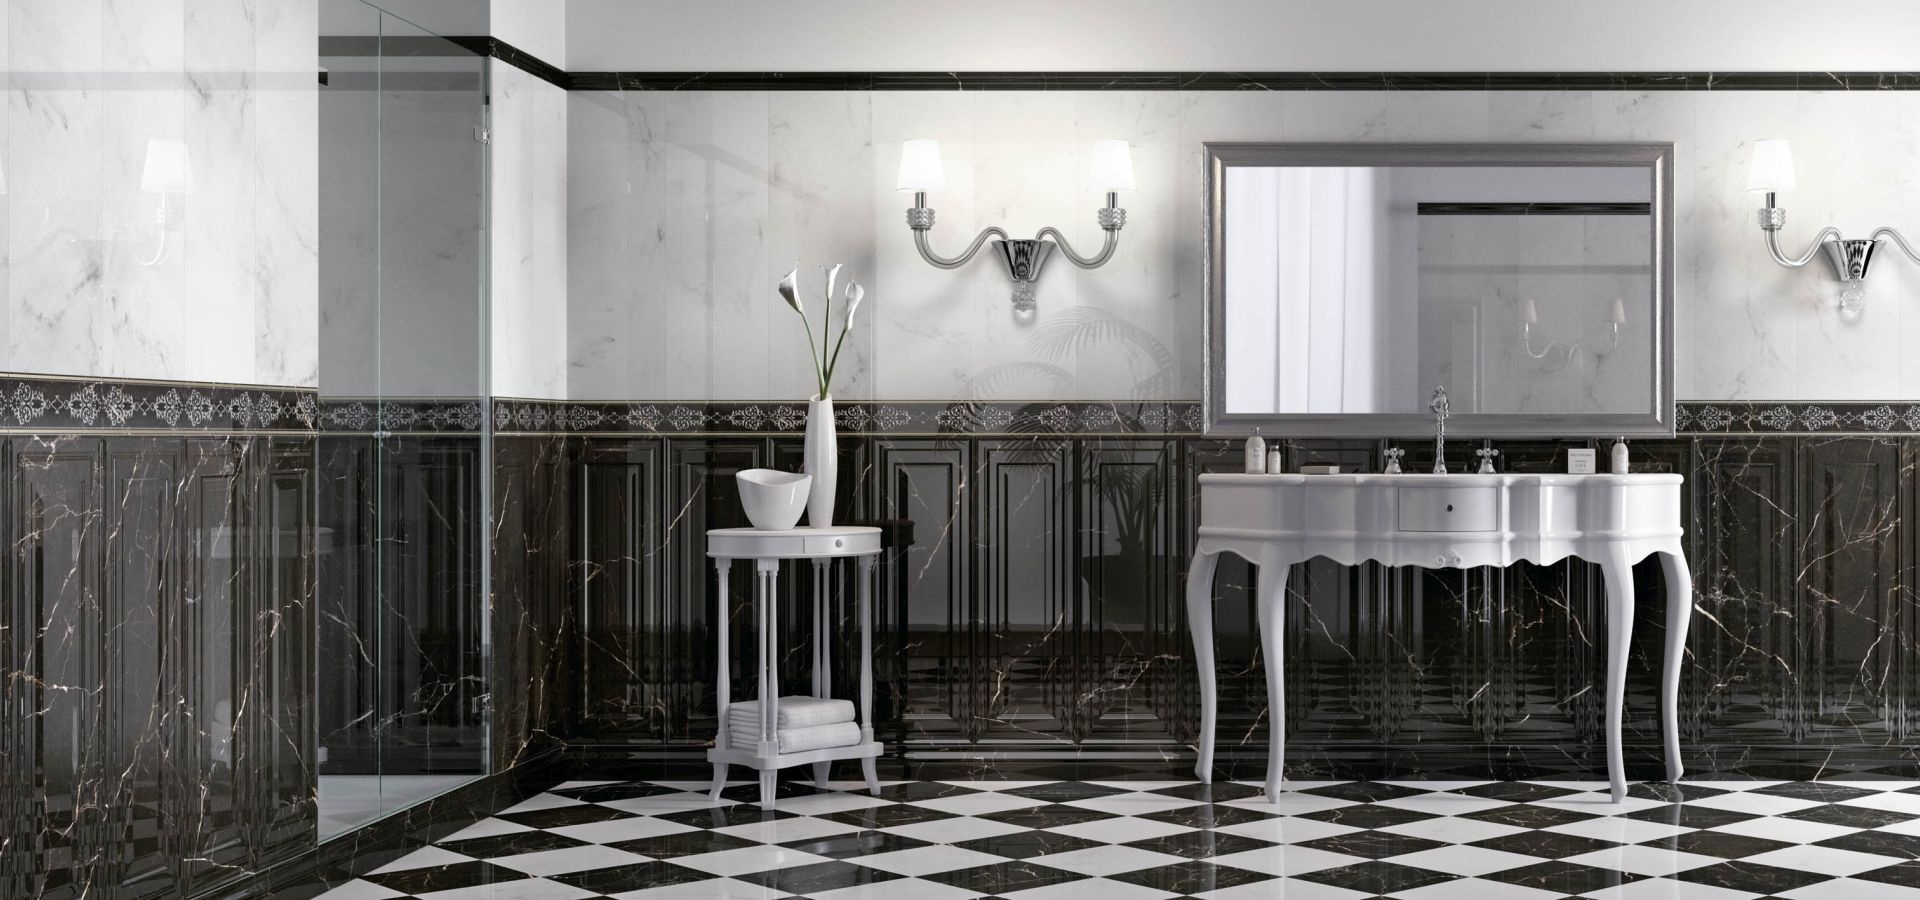 Ilustrační obrázek koupelny, kde je použita kolekce crystal marble v imitaci jemného mramoru v bílo-černé kombinaci.